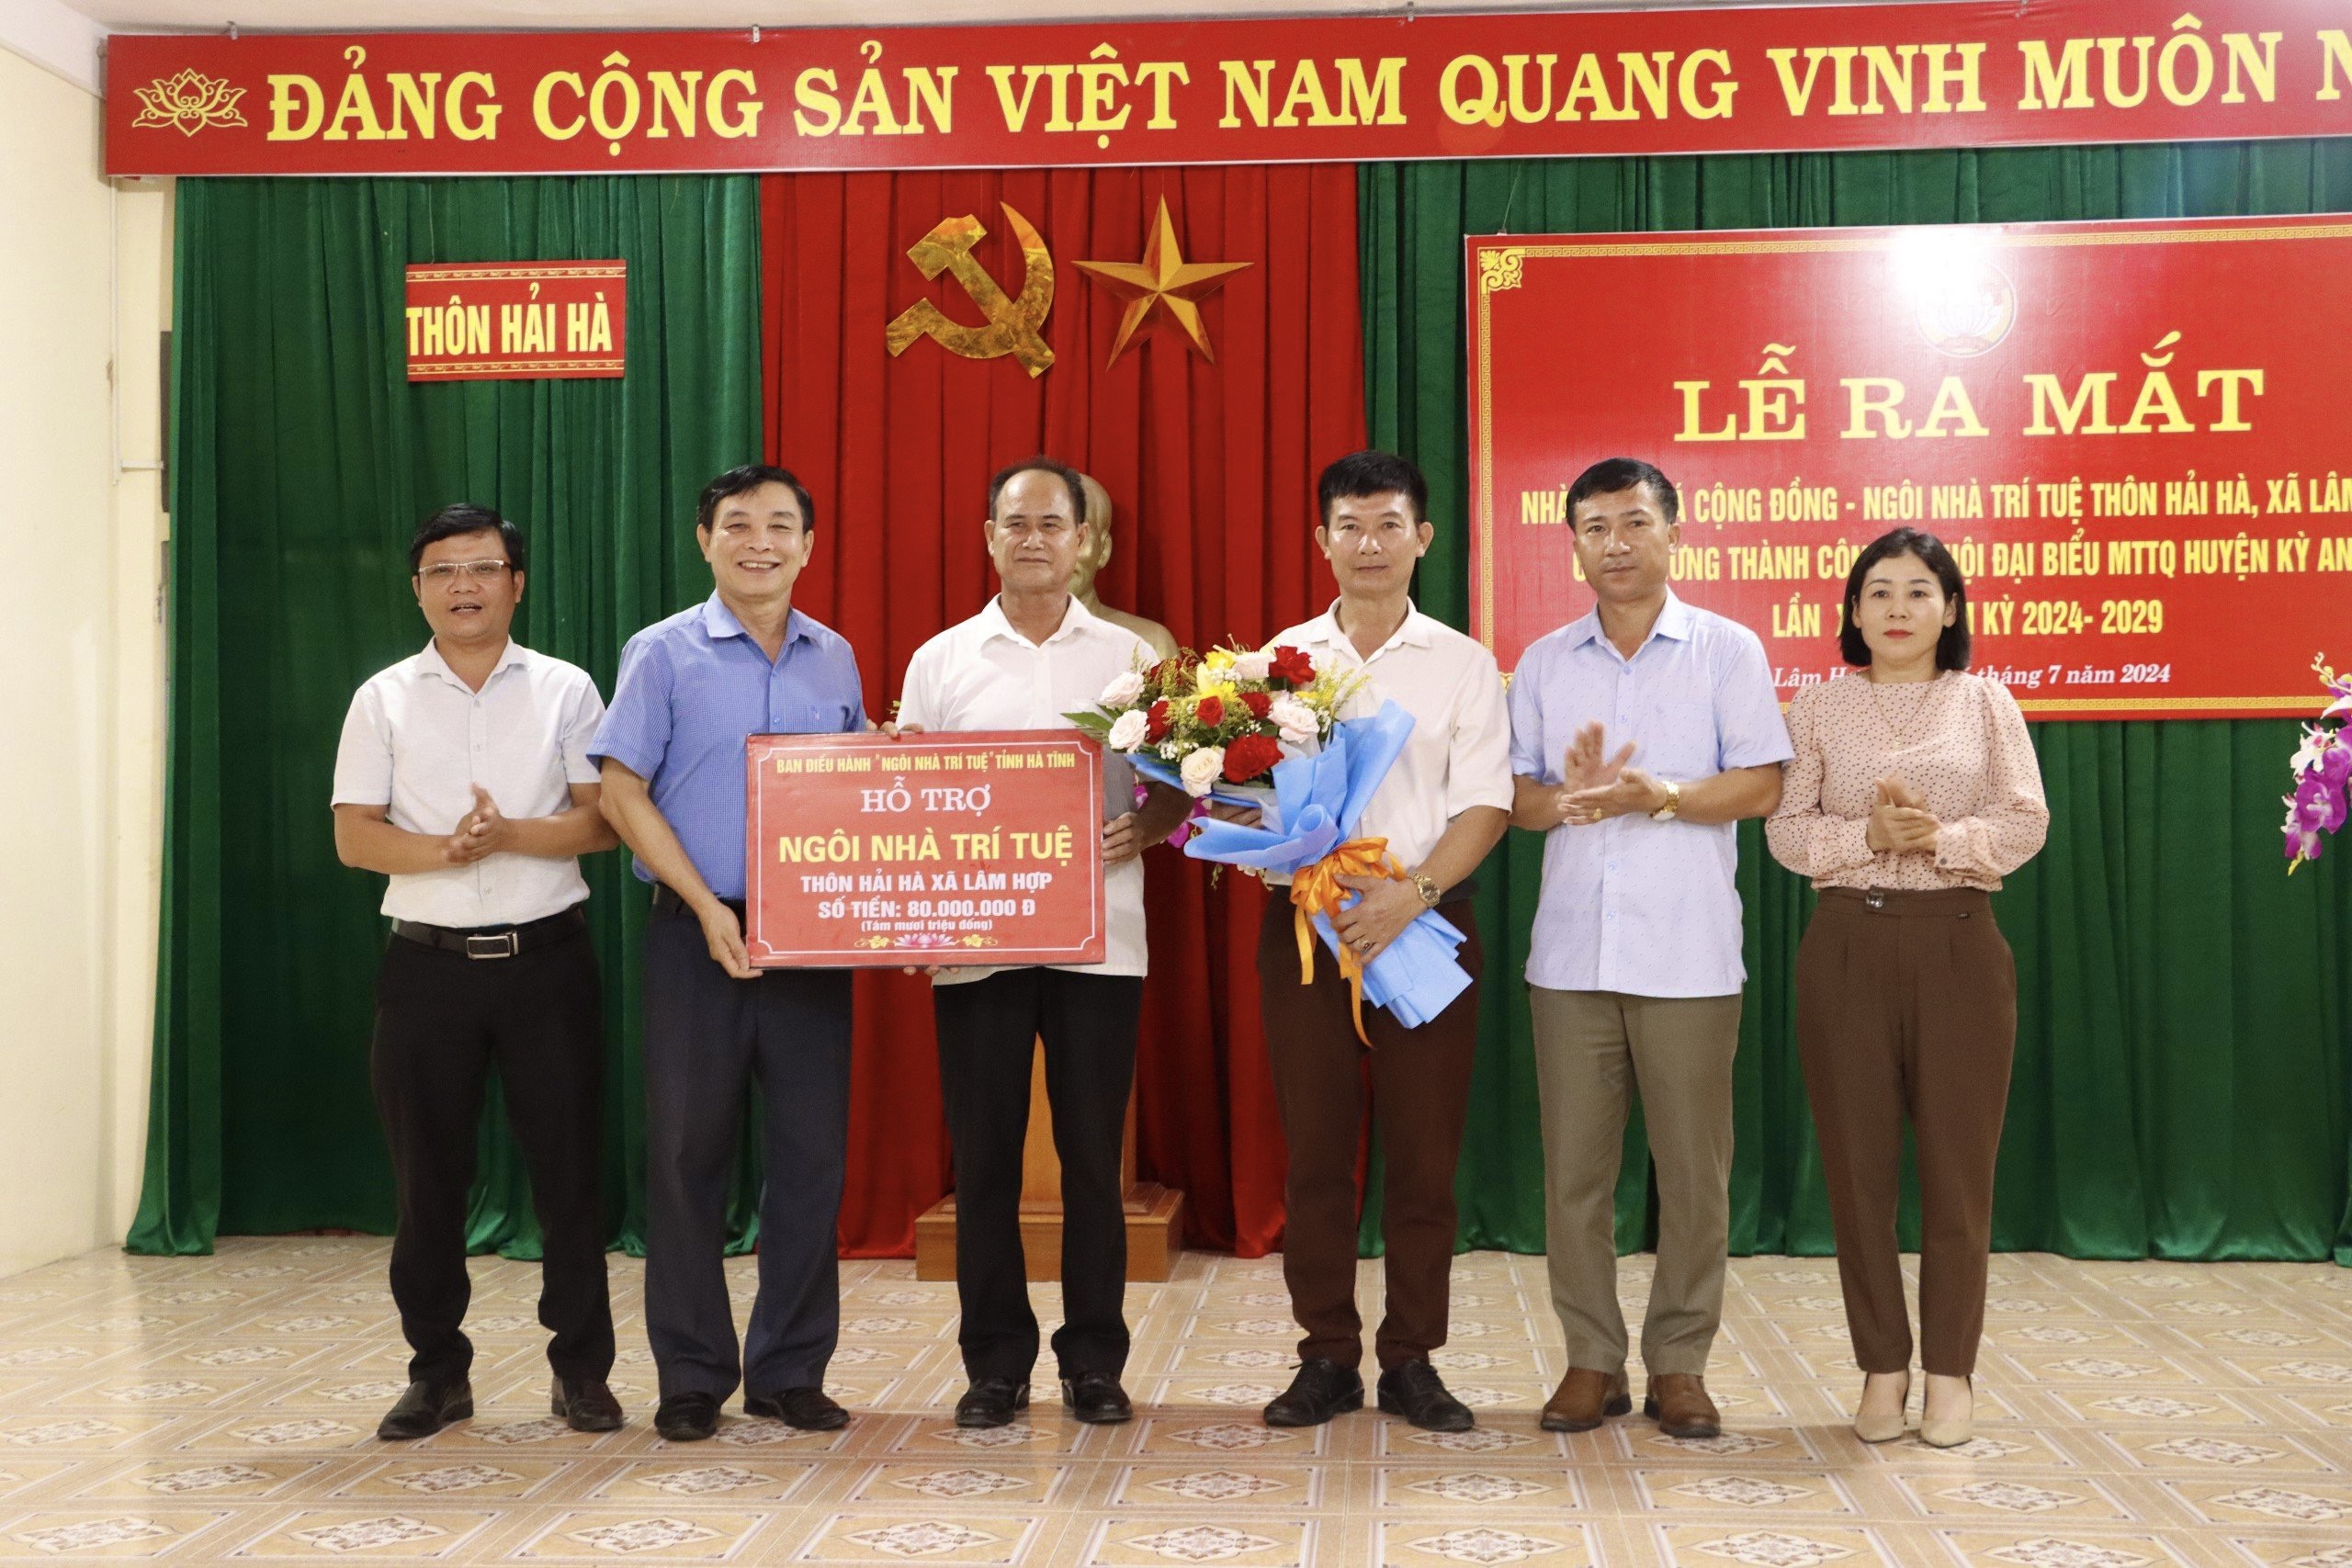 Lễ ra mắt nhà văn hóa cộng đồng - Ngôi nhà trí tuệ thôn Hải Hà, xã Lâm Hợp